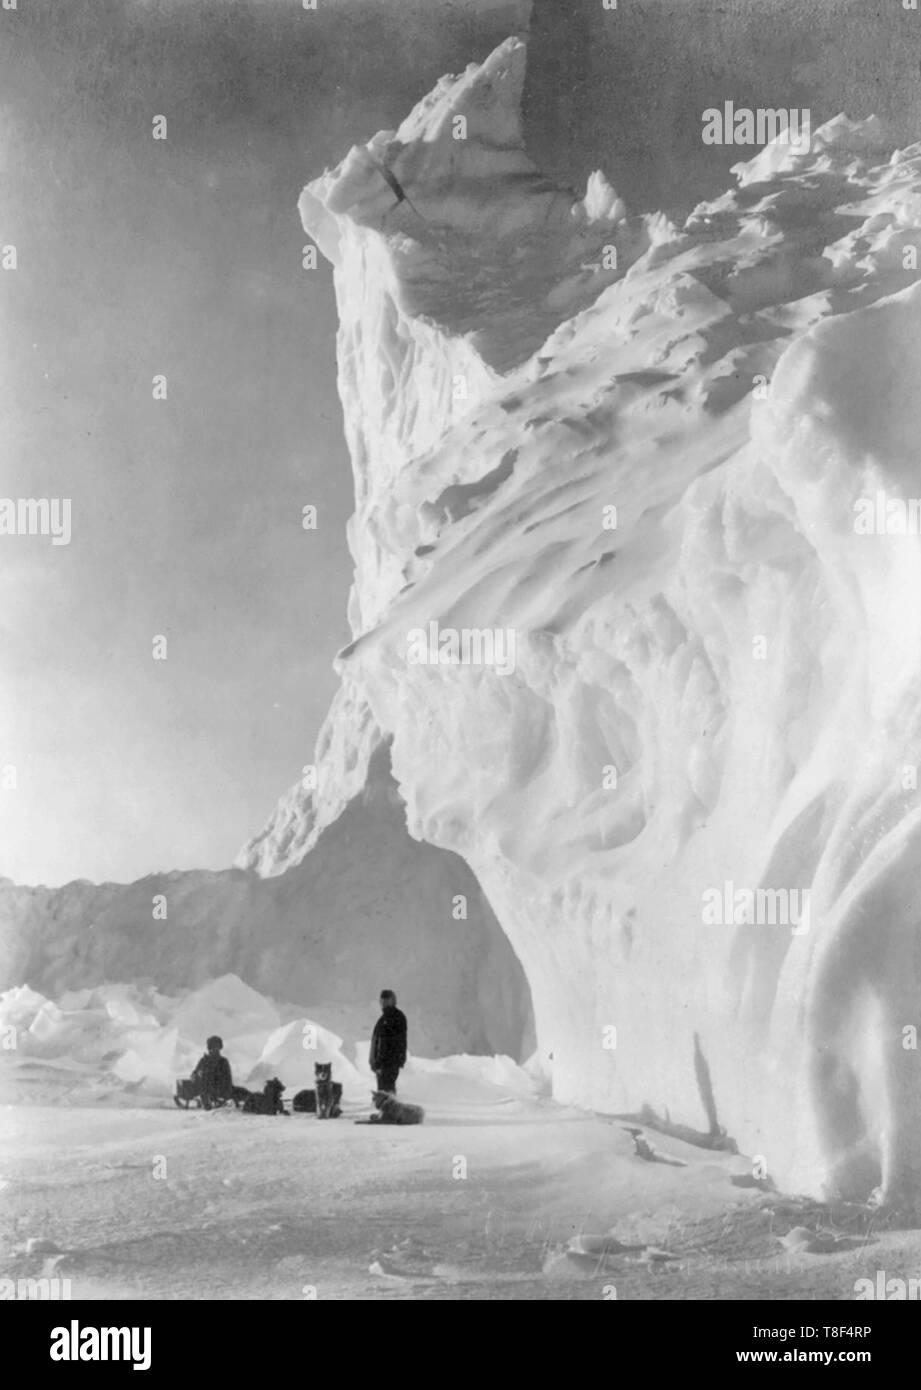 Il team di cane appoggiata da un iceberg - fotografia mostra due uomini in appoggio con un team dogsled vicino a un iceberg, durante la British Antarctic Expedition, circa 1910 Foto Stock